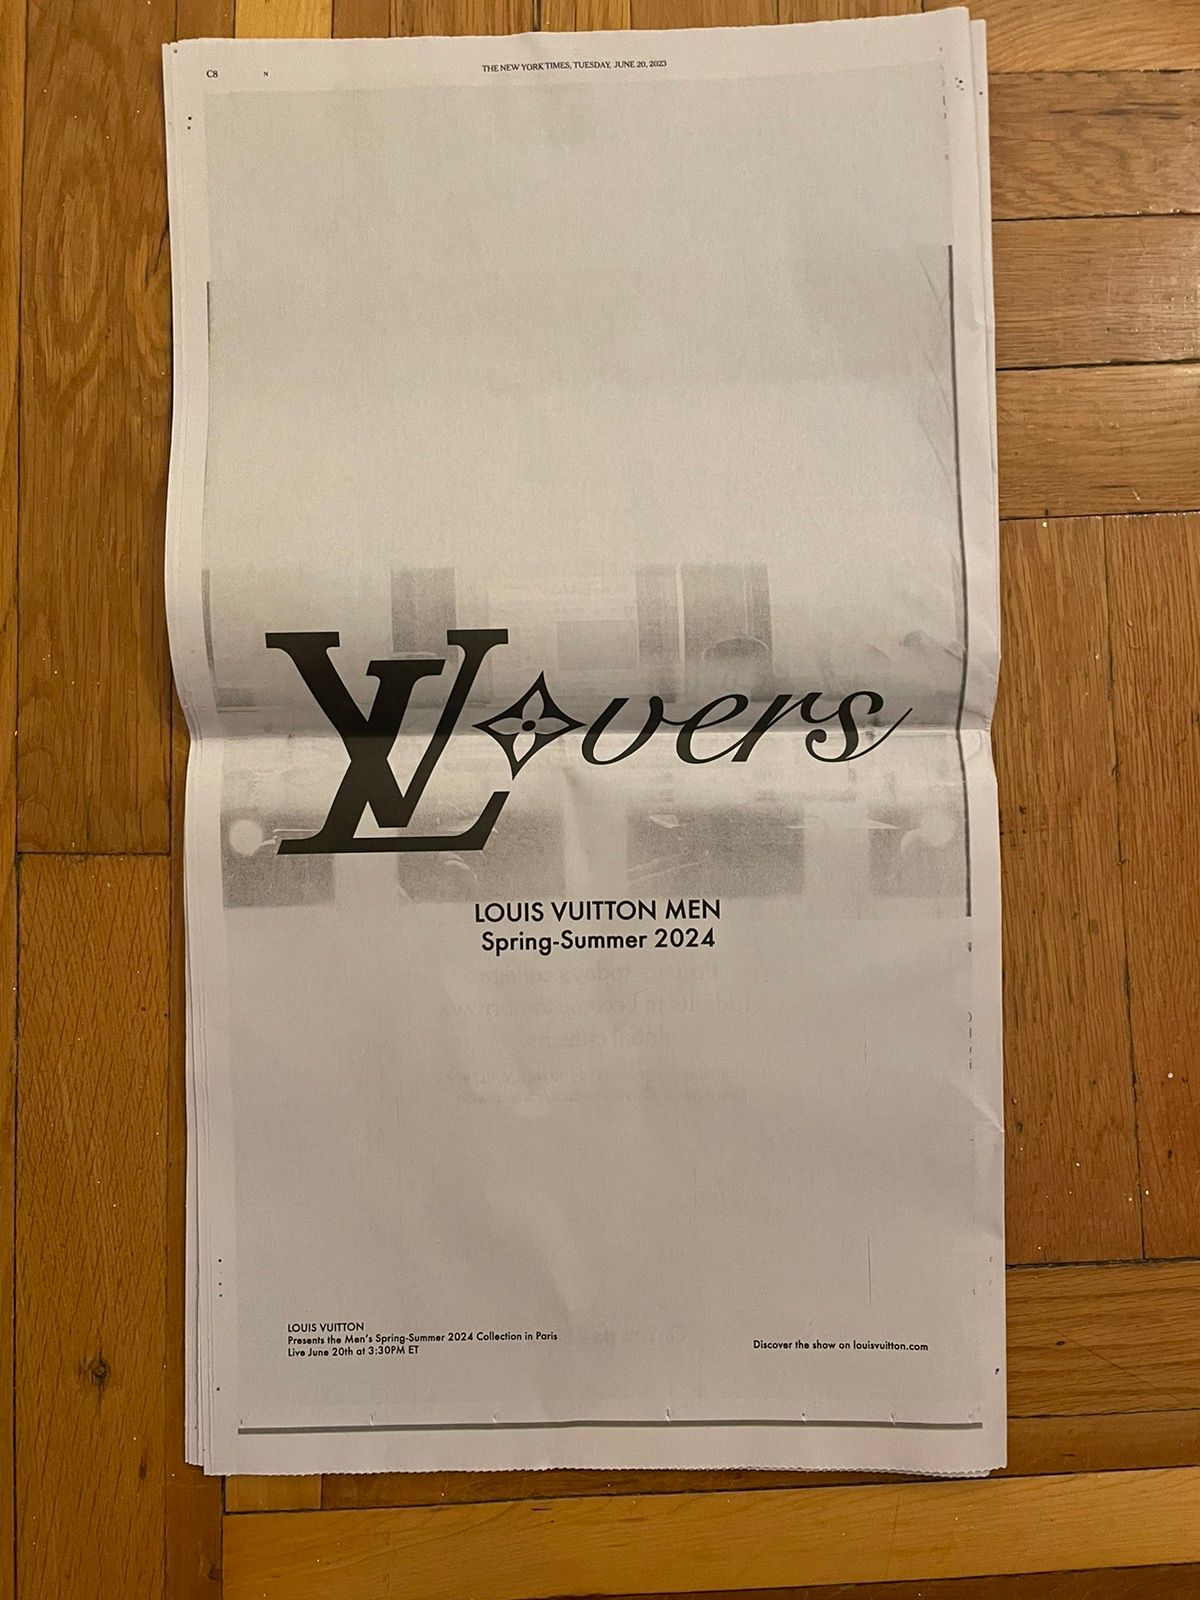 Louis Vuitton receipt Paris